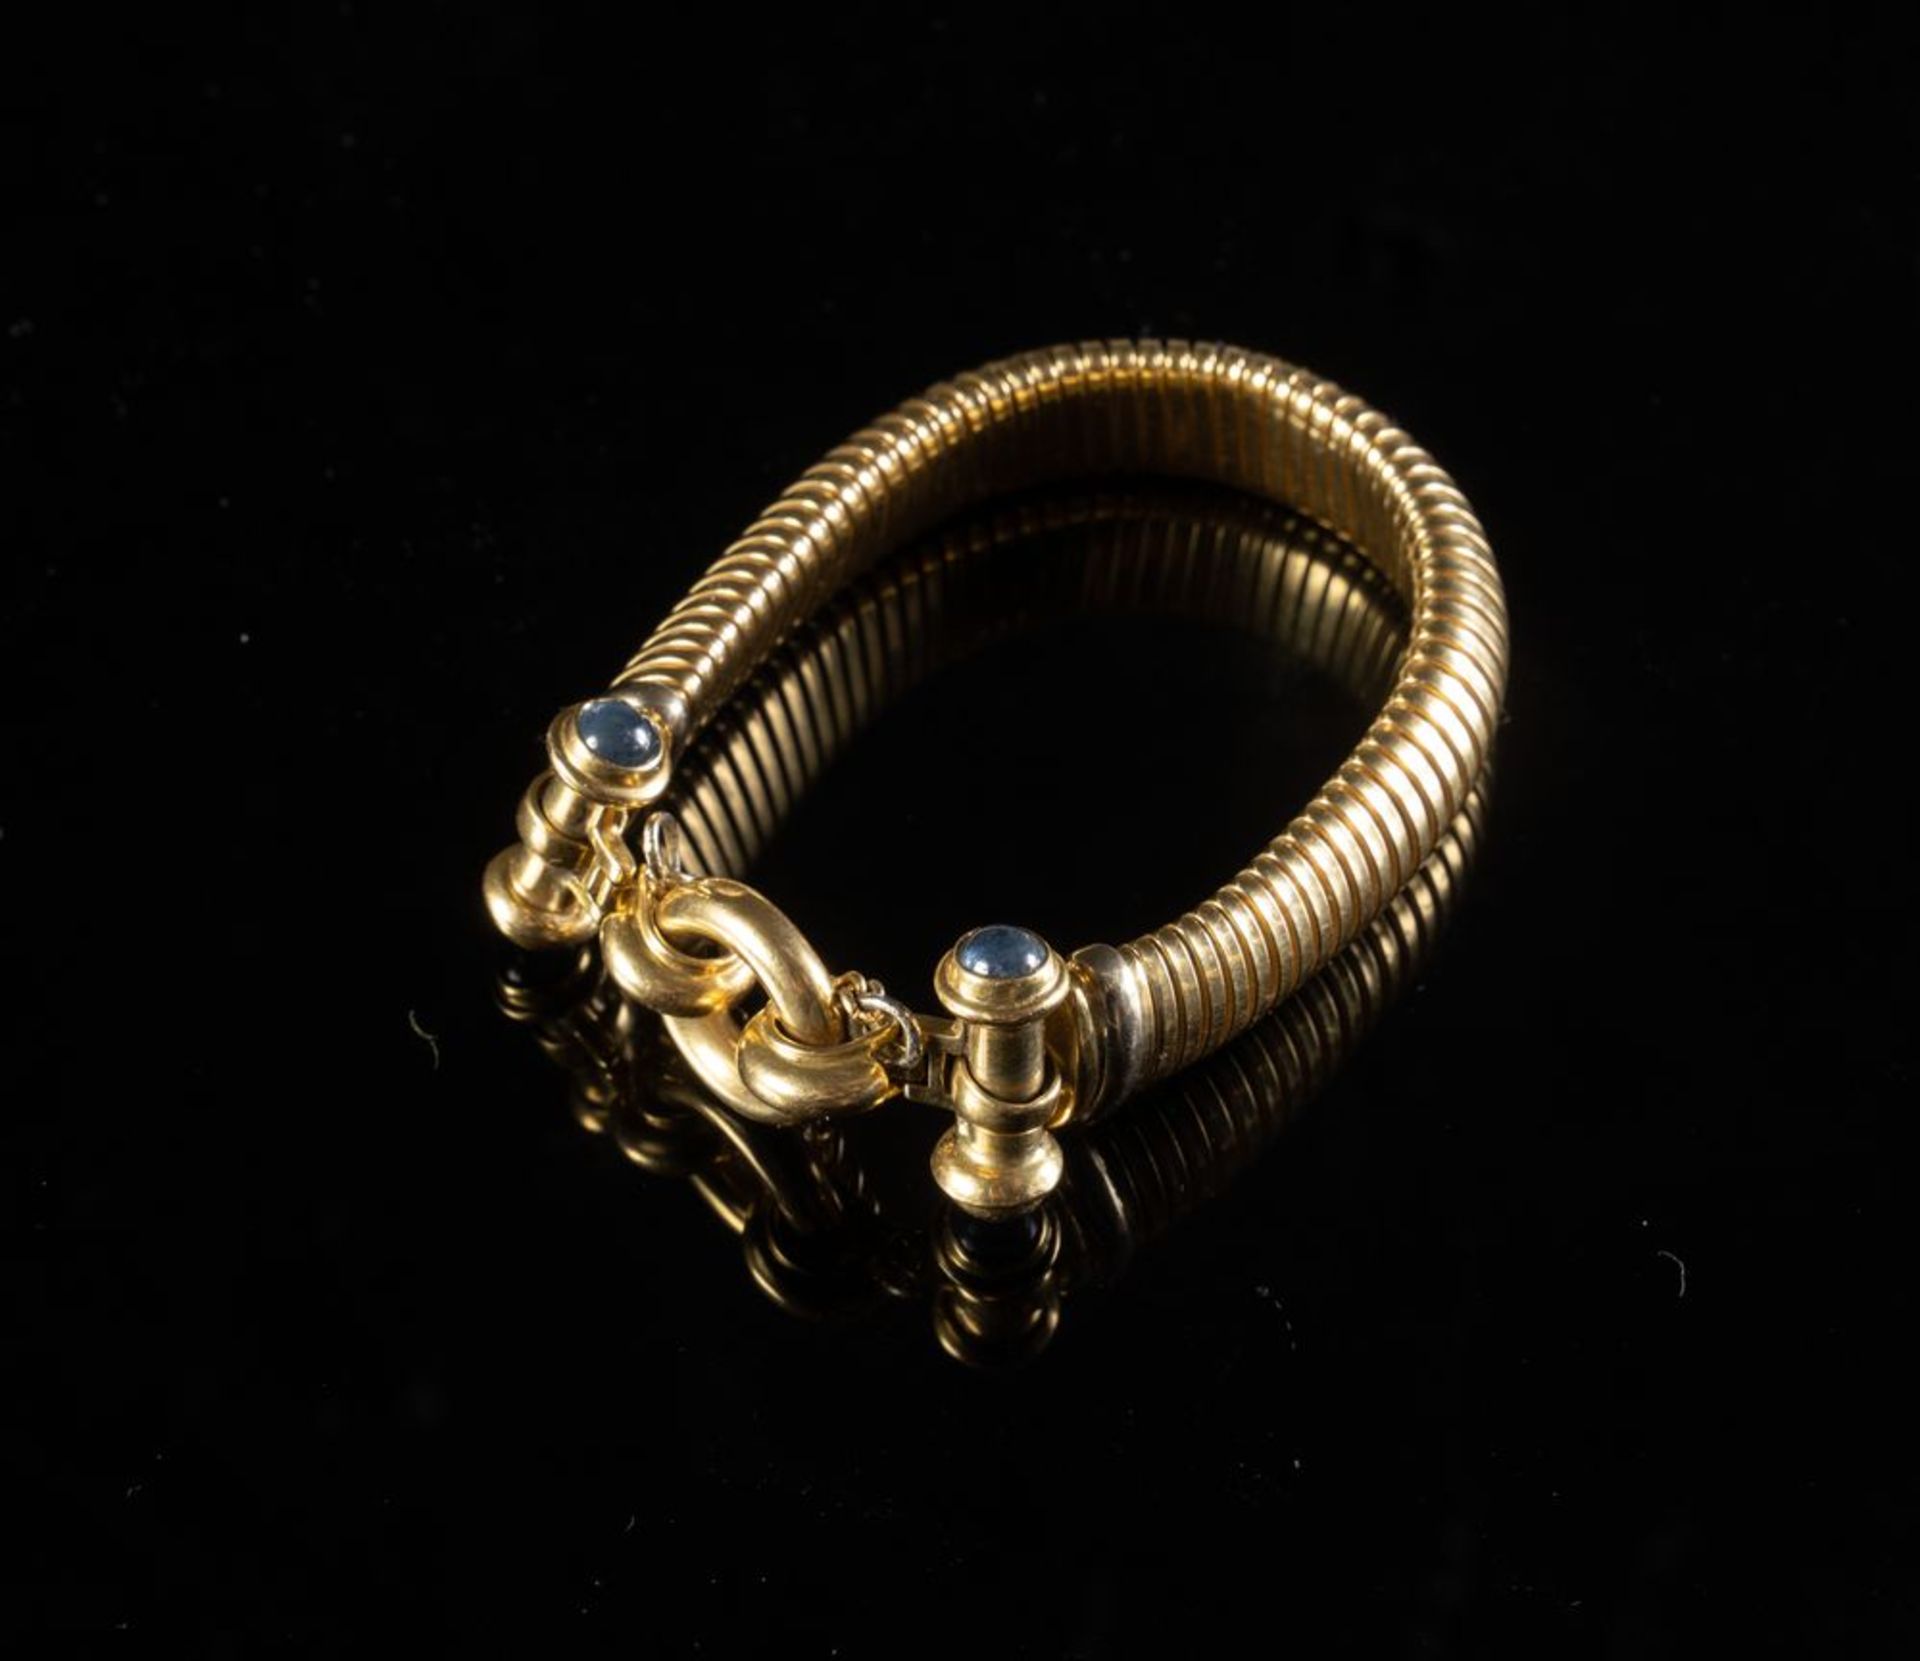 DEMIPARURE IN ORO GIALLO
Costituita da bracciale e collana in oro giallo 18k con inserti di pietra a - Bild 6 aus 8